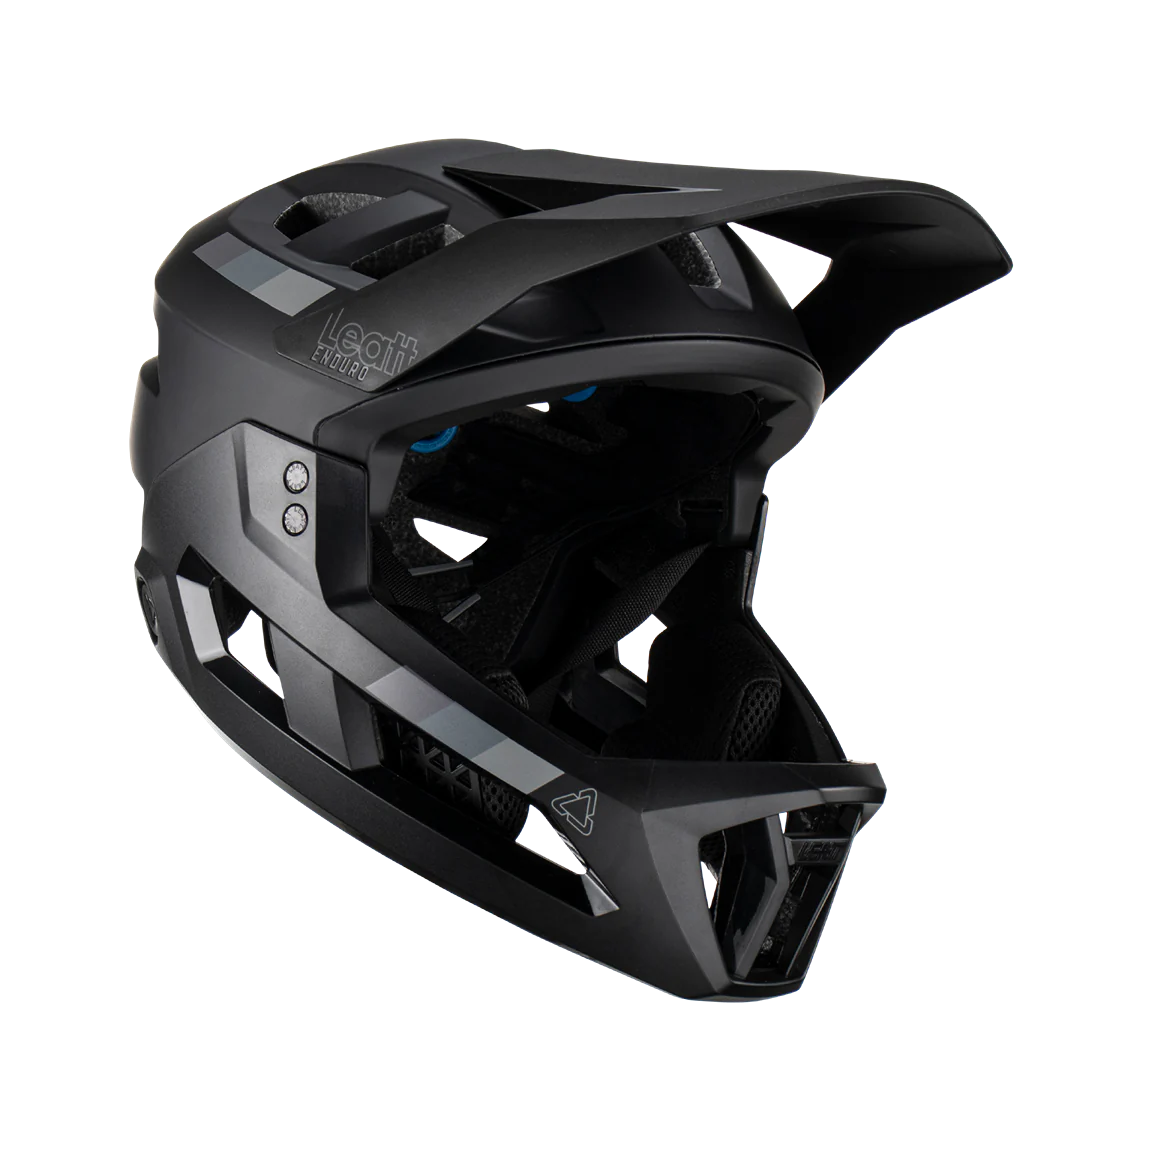 Leatt MTB Enduro 2.0 V23 helmet